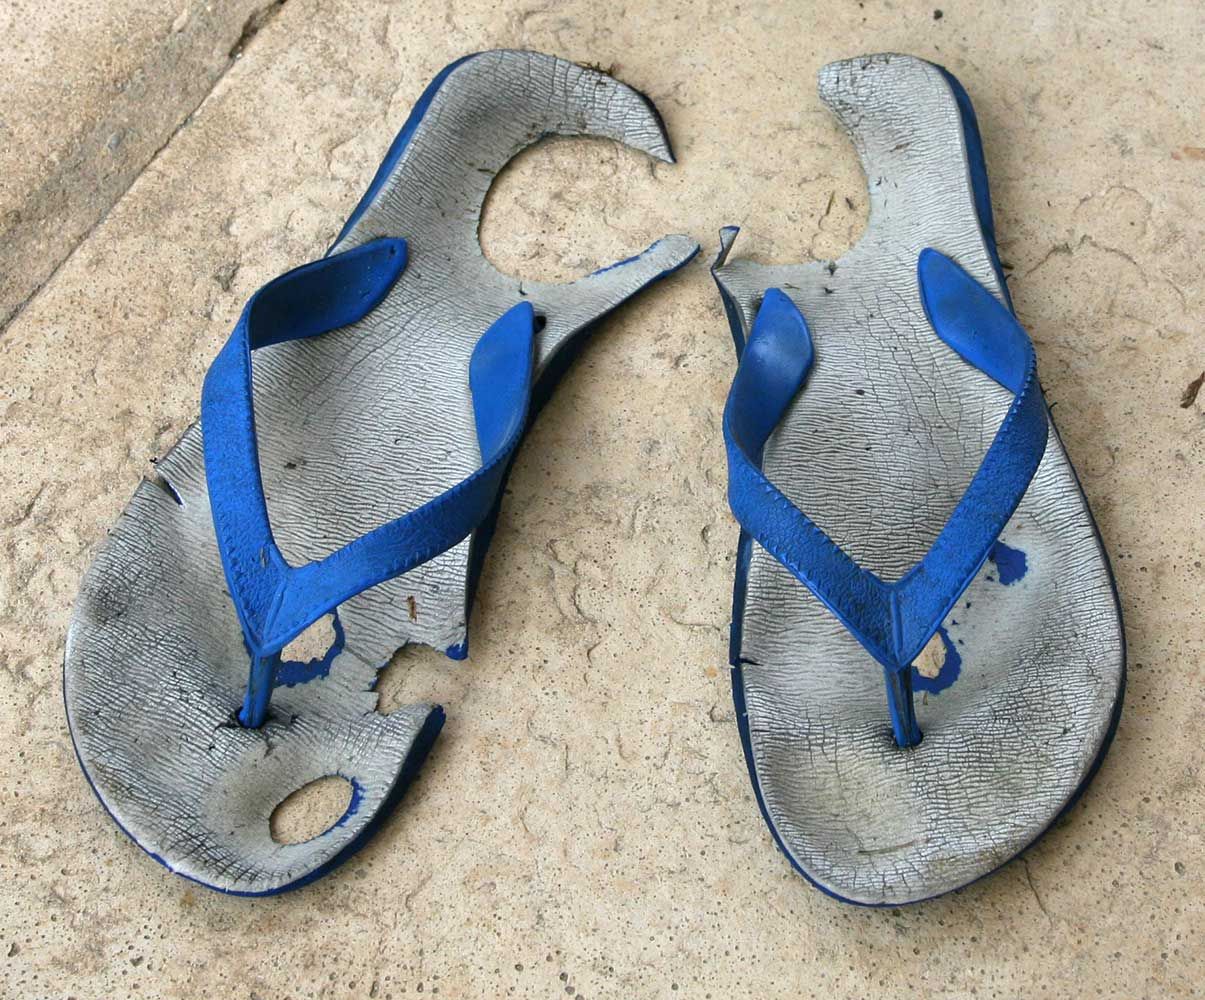 9 Best Men's Fishermen Sandals & Closed-Toe Styles That Hide Feet